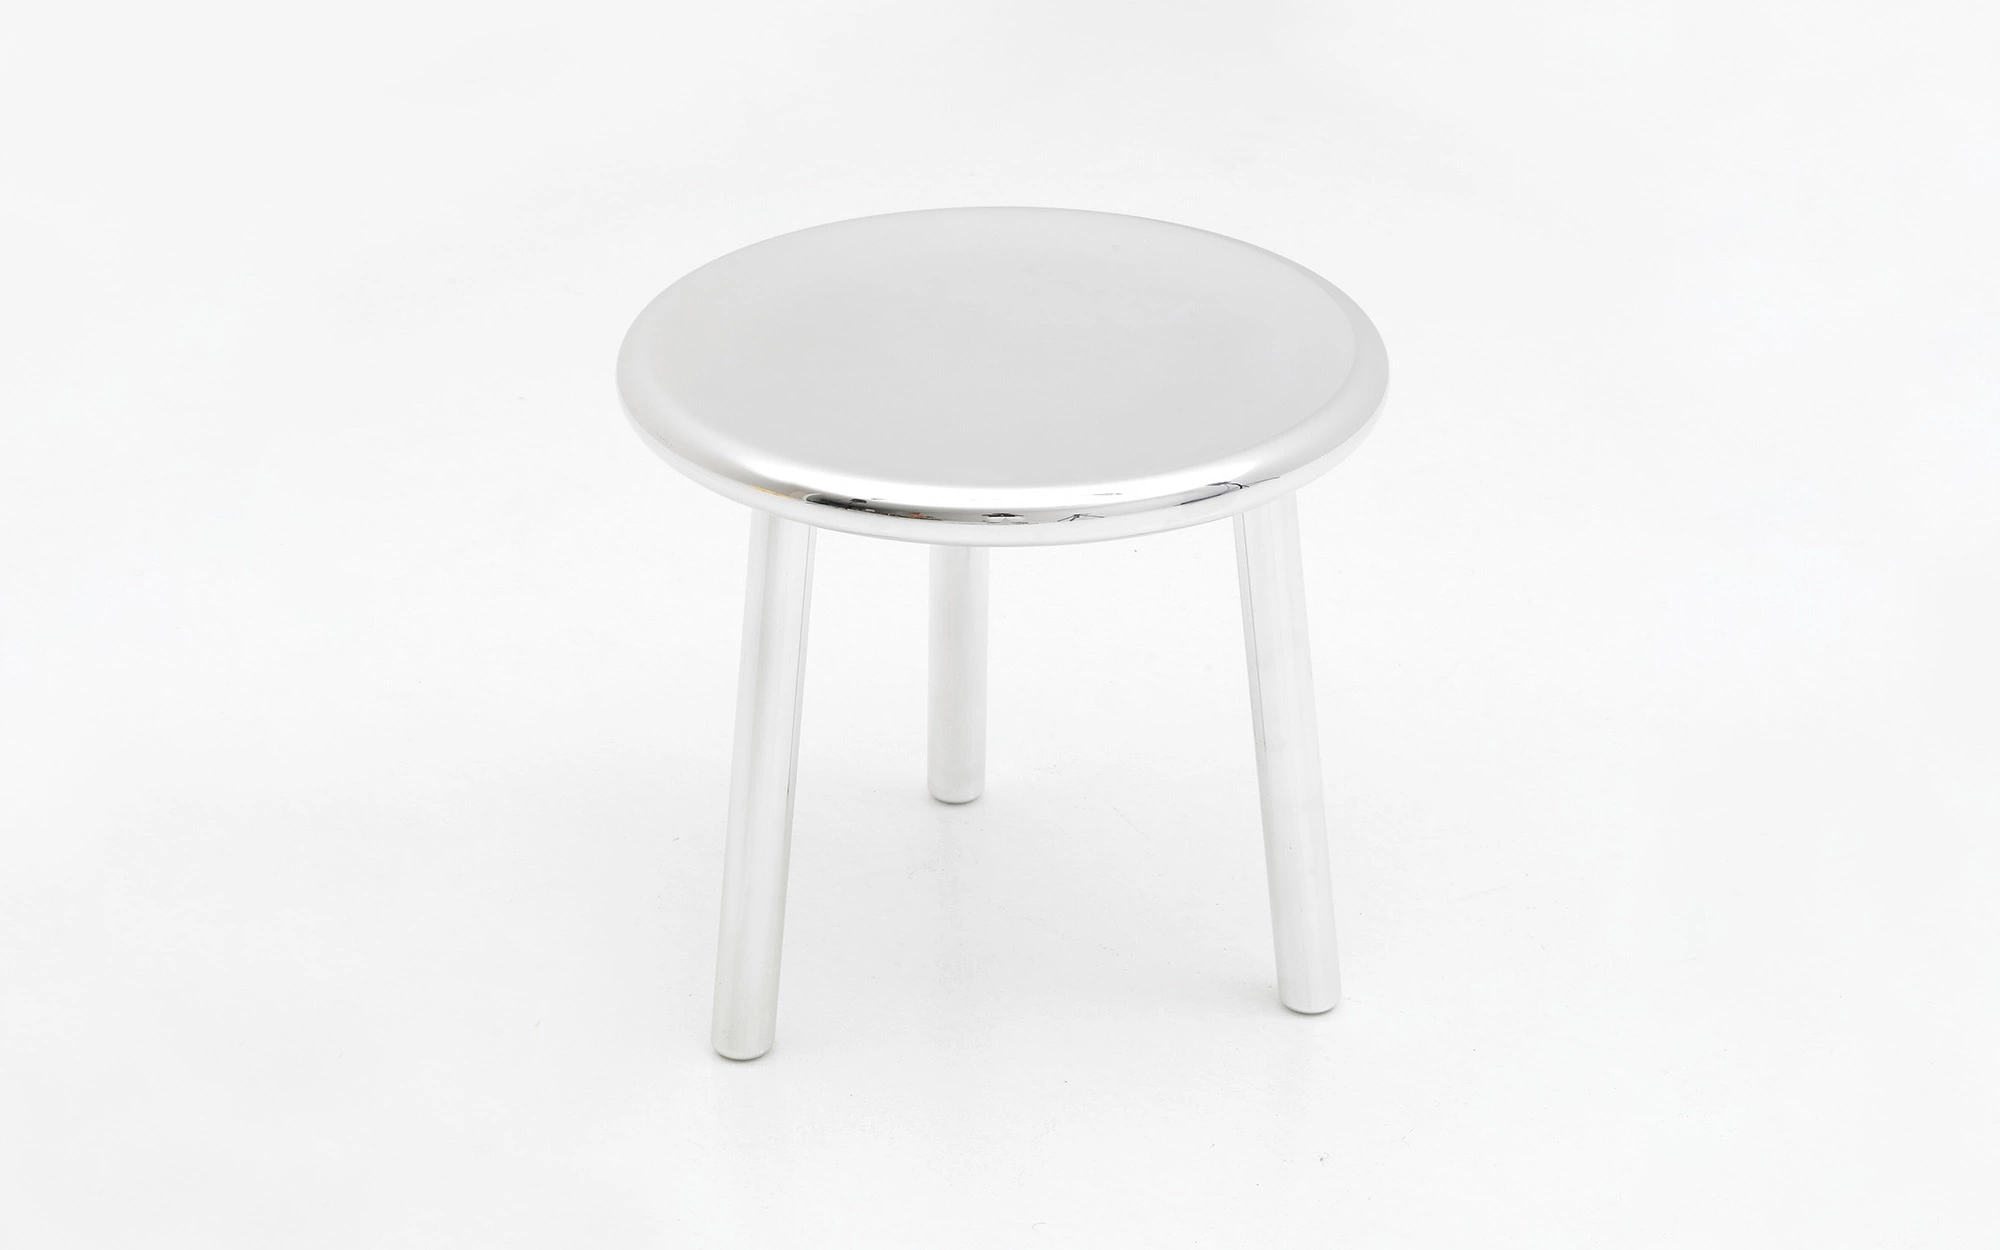 3-legged stool - Jasper Morrison - .